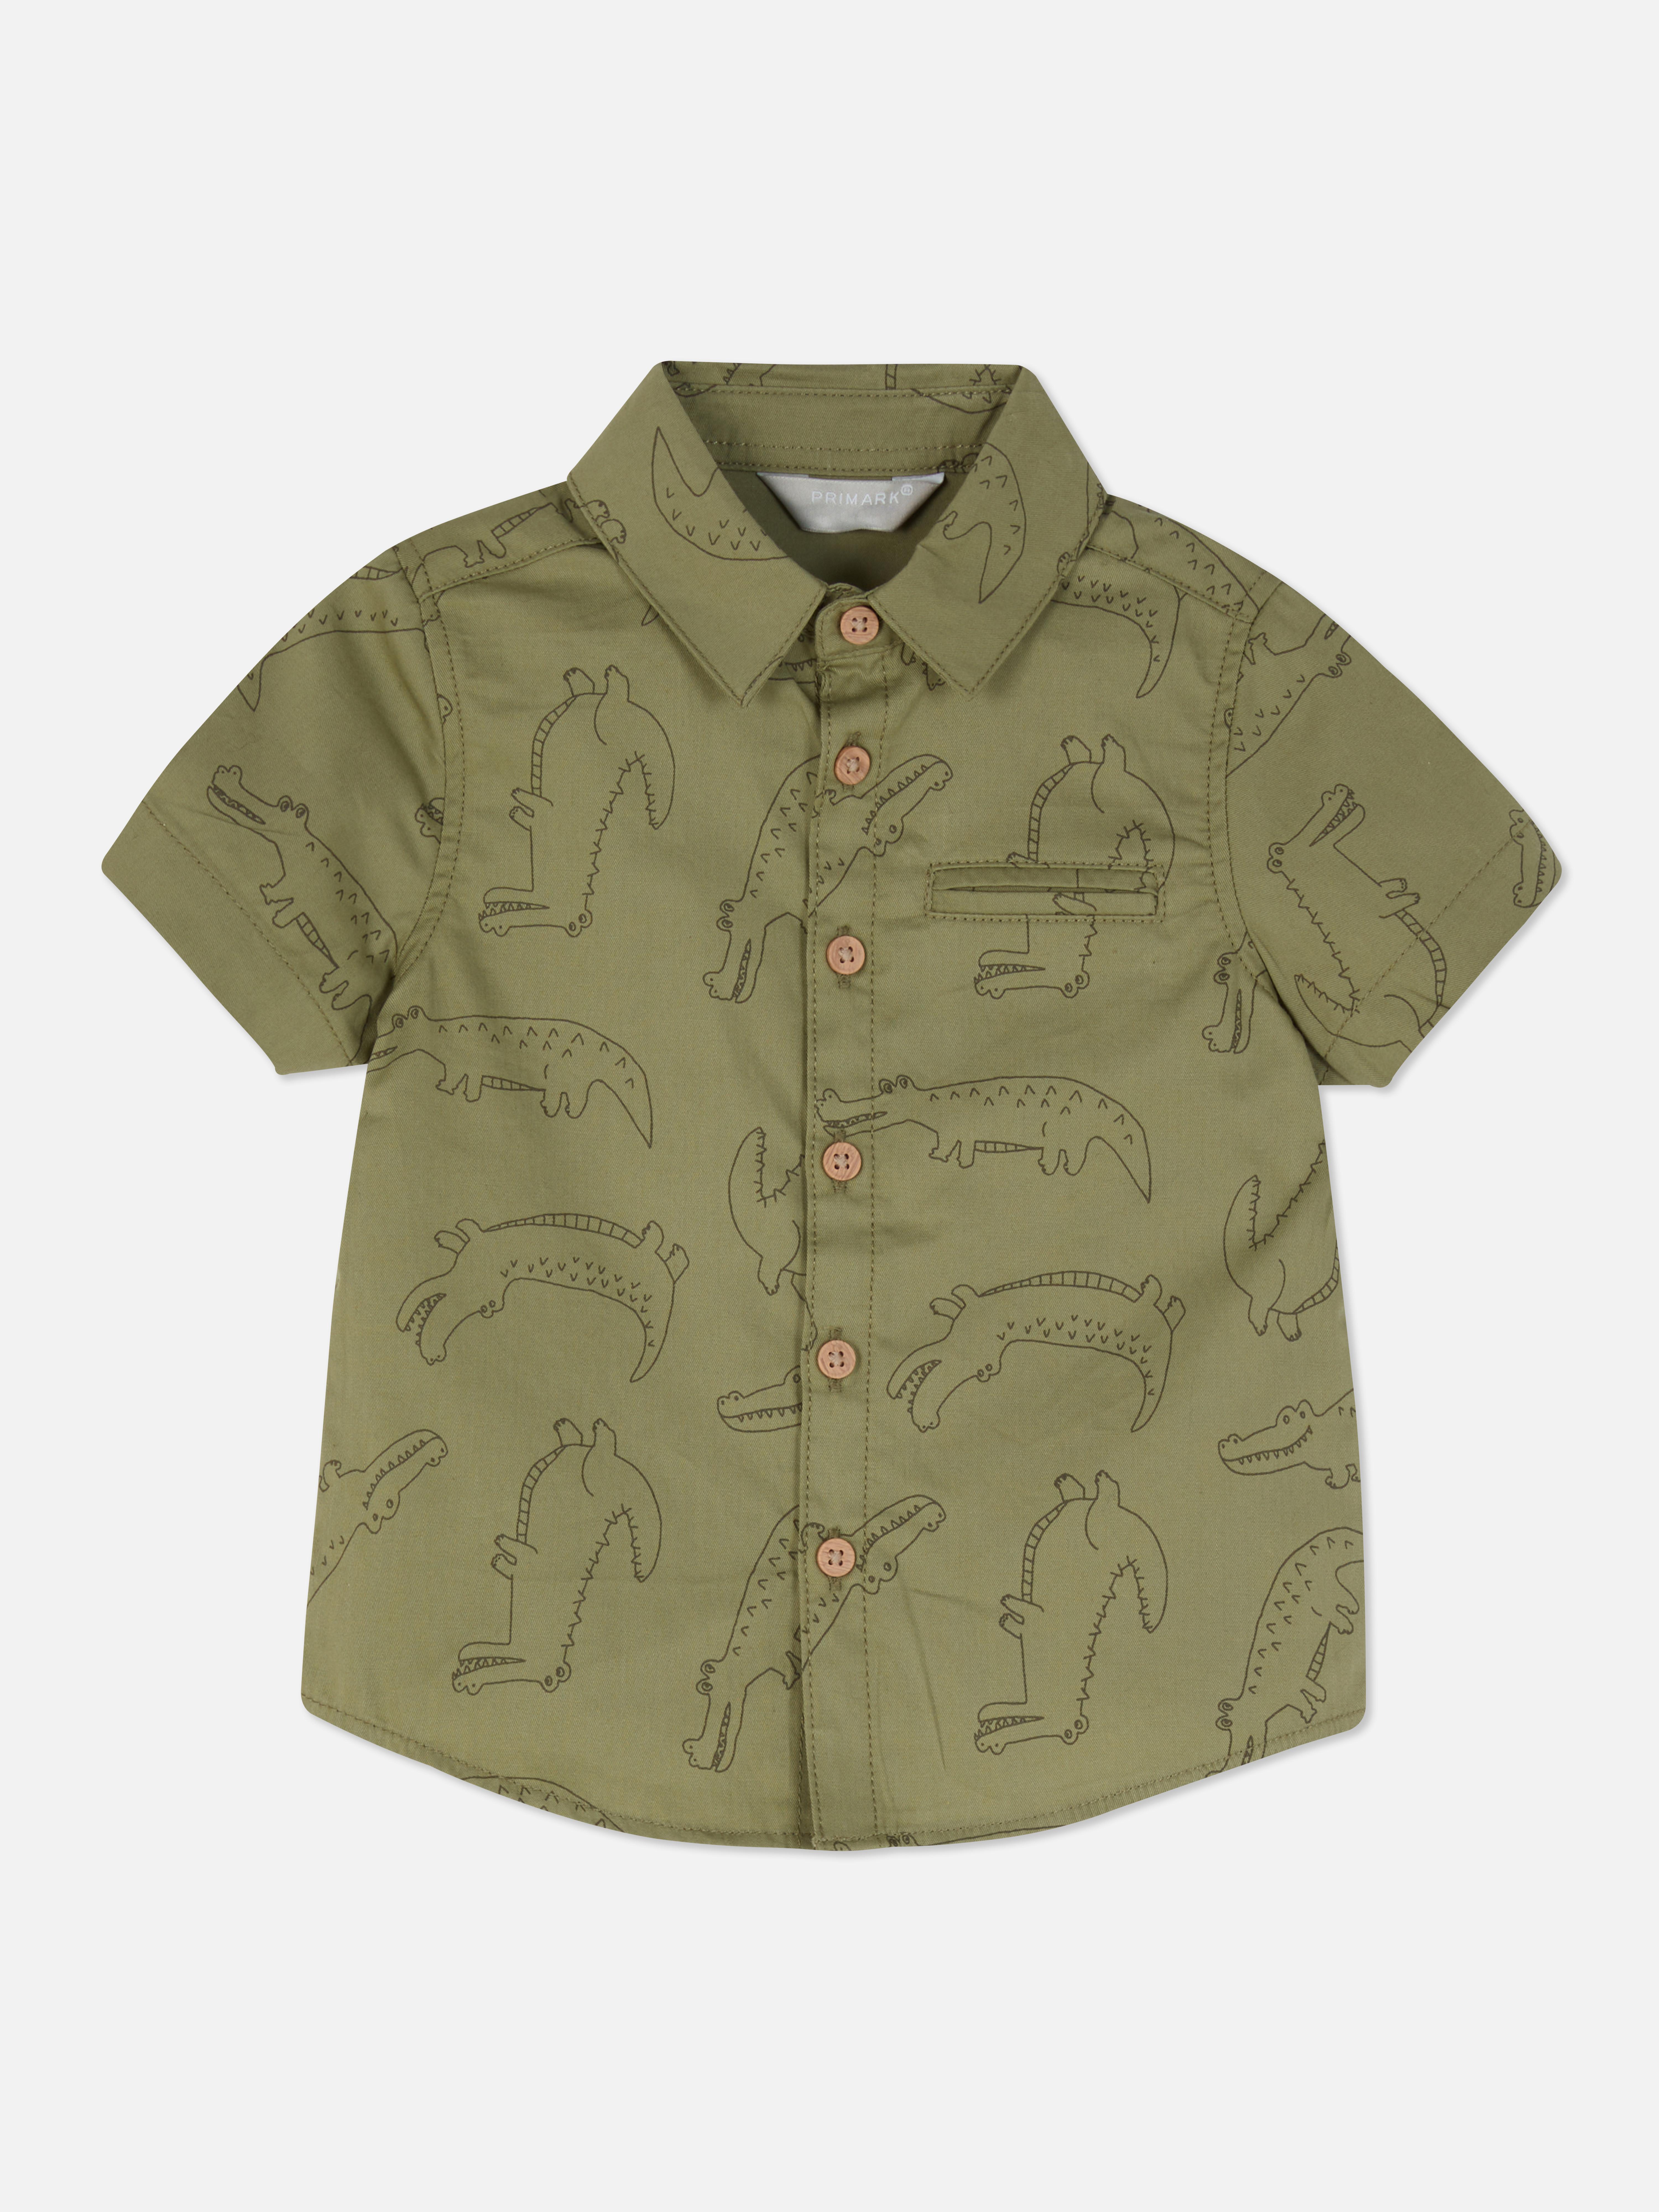 Crocodile Collared Shirt